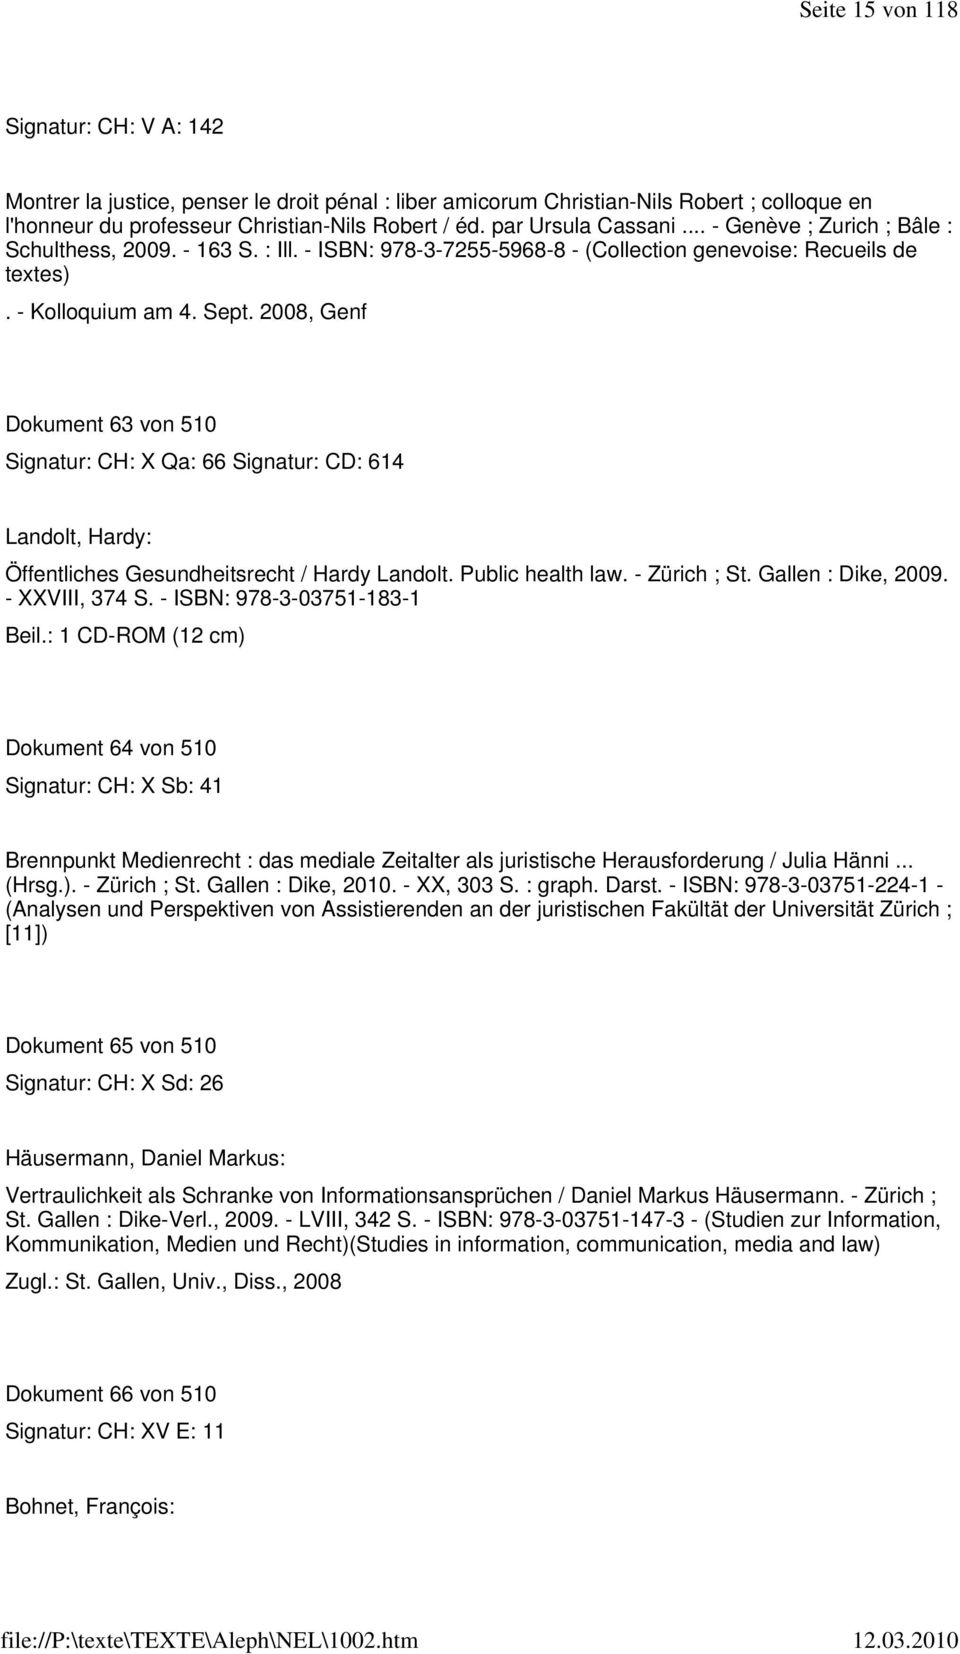 2008, Genf Dokument 63 von 510 Signatur: CH: X Qa: 66 Signatur: CD: 614 Landolt, Hardy: Öffentliches Gesundheitsrecht / Hardy Landolt. Public health law. - Zürich ; St. Gallen : Dike, 2009.